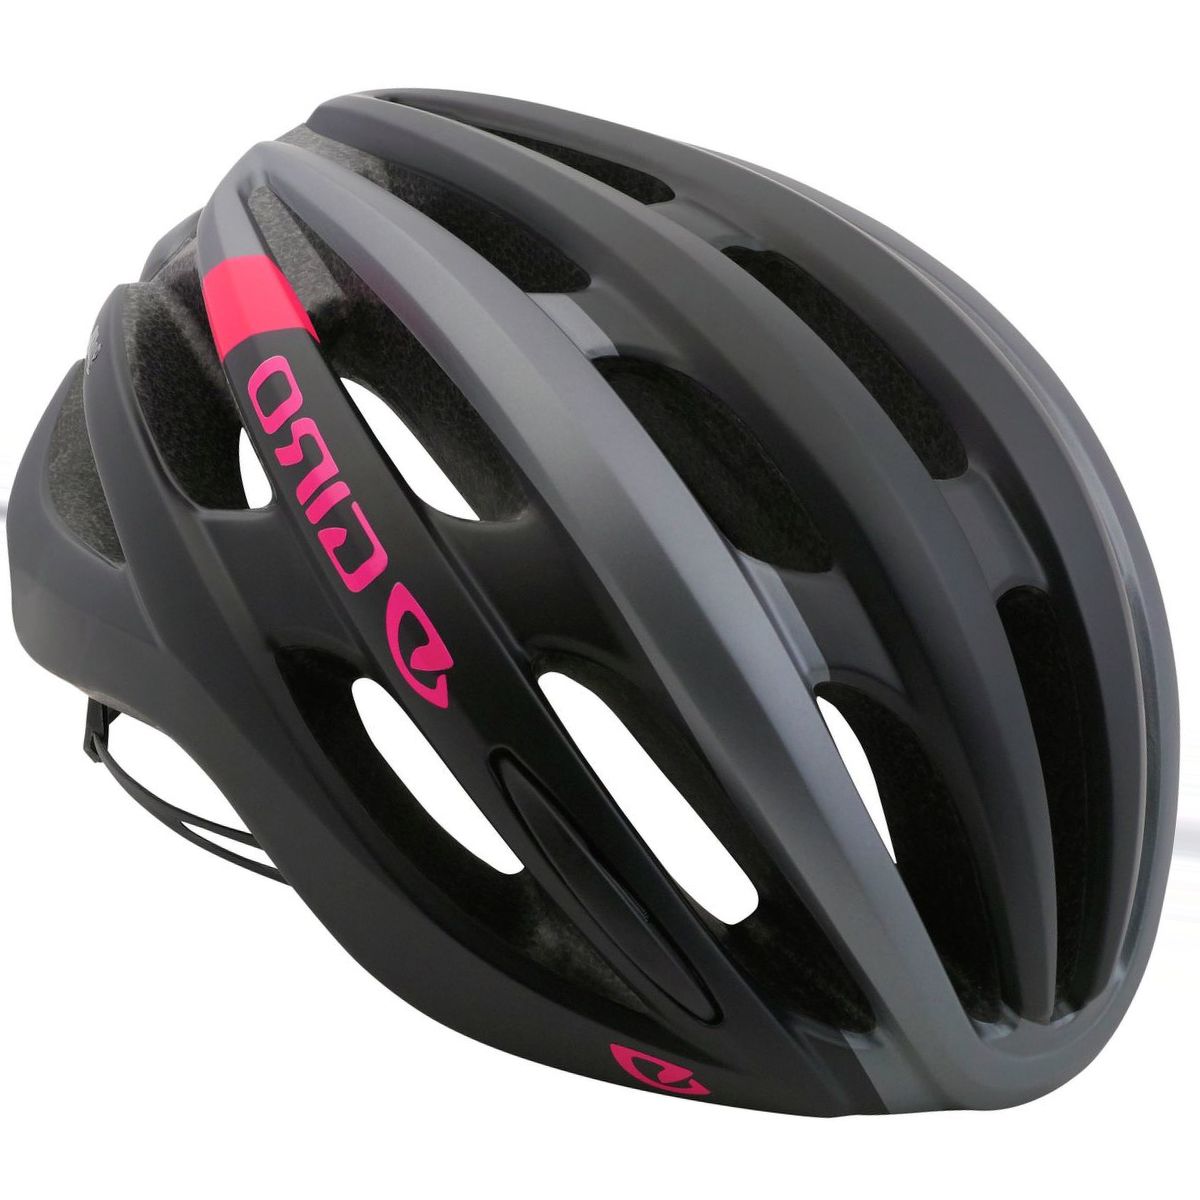 Giro Saga Helmet - Women's